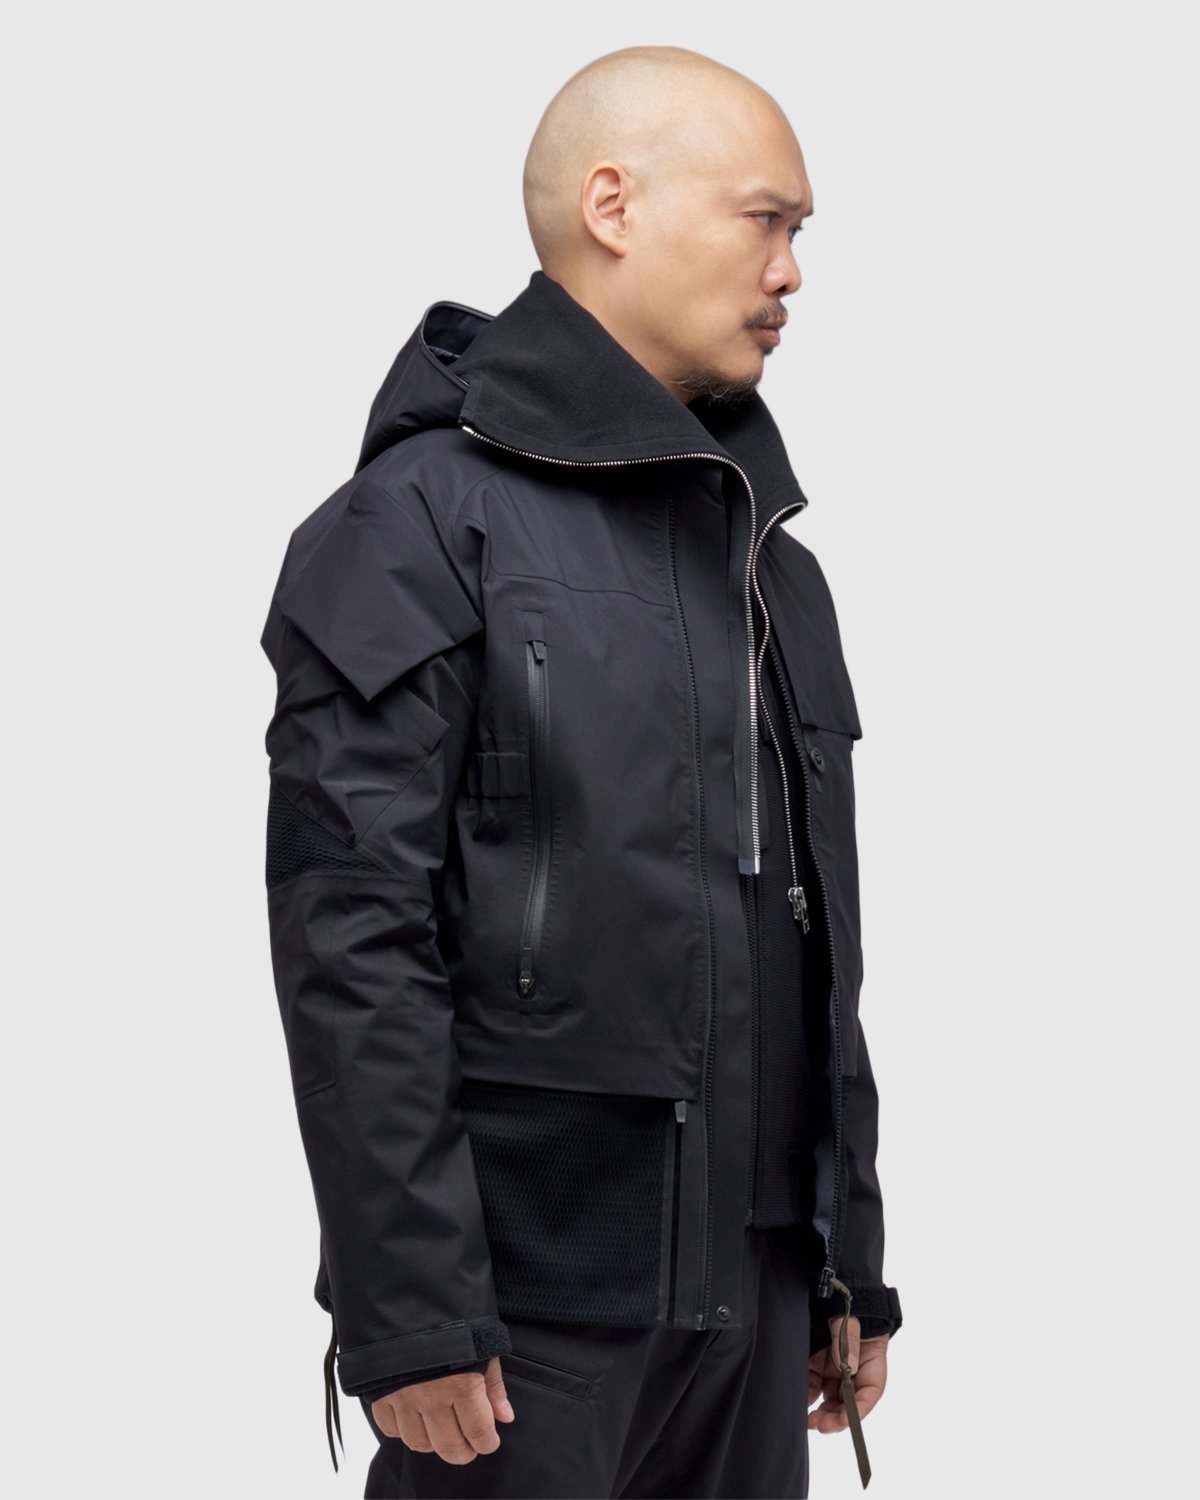 ACRONYM - J16-GT Jacket Black - Clothing - Black - Image 7